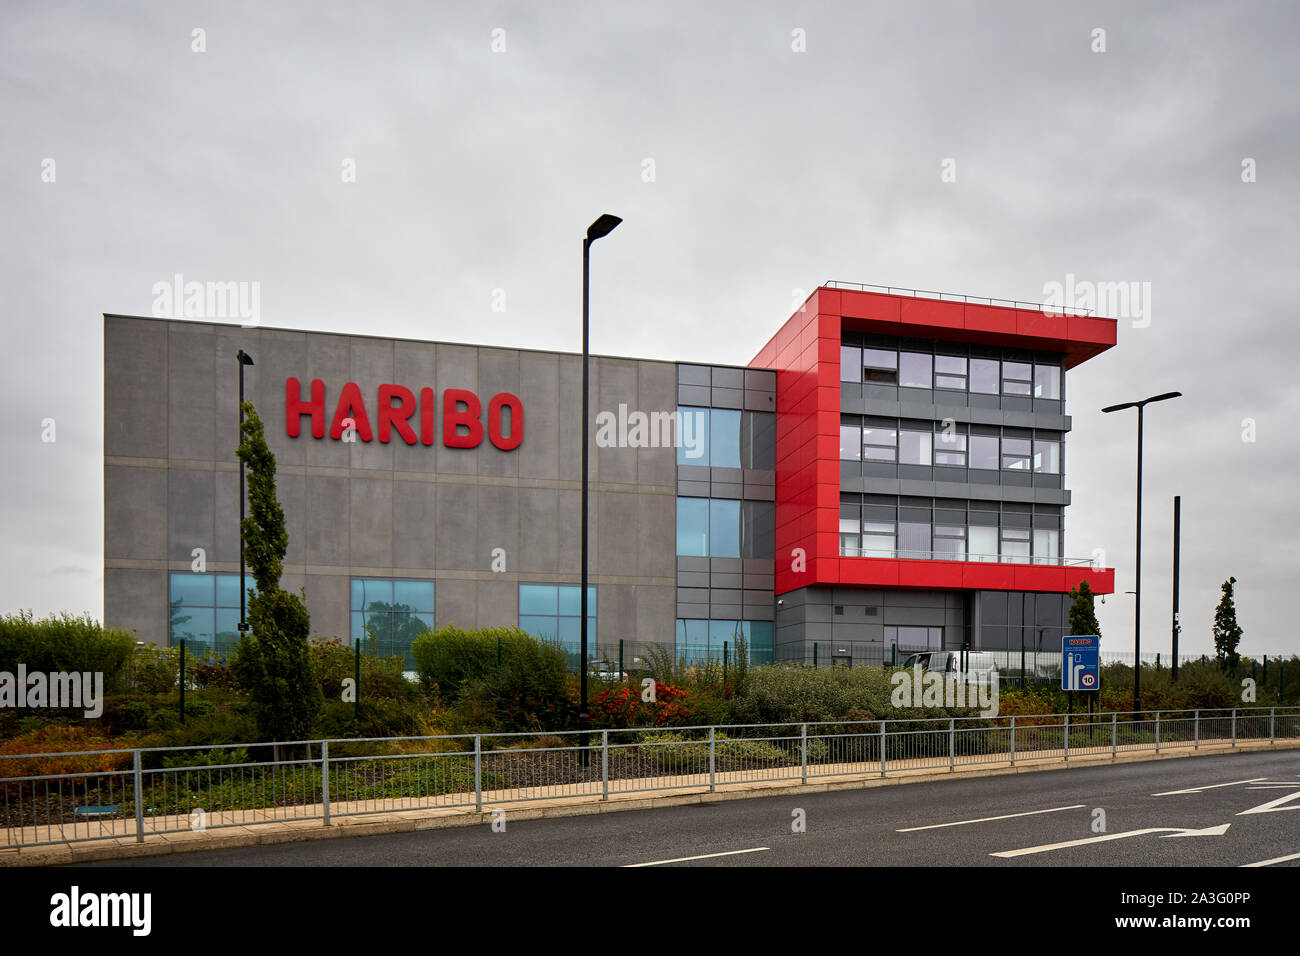 Haribo factory immagini e fotografie stock ad alta risoluzione - Alamy